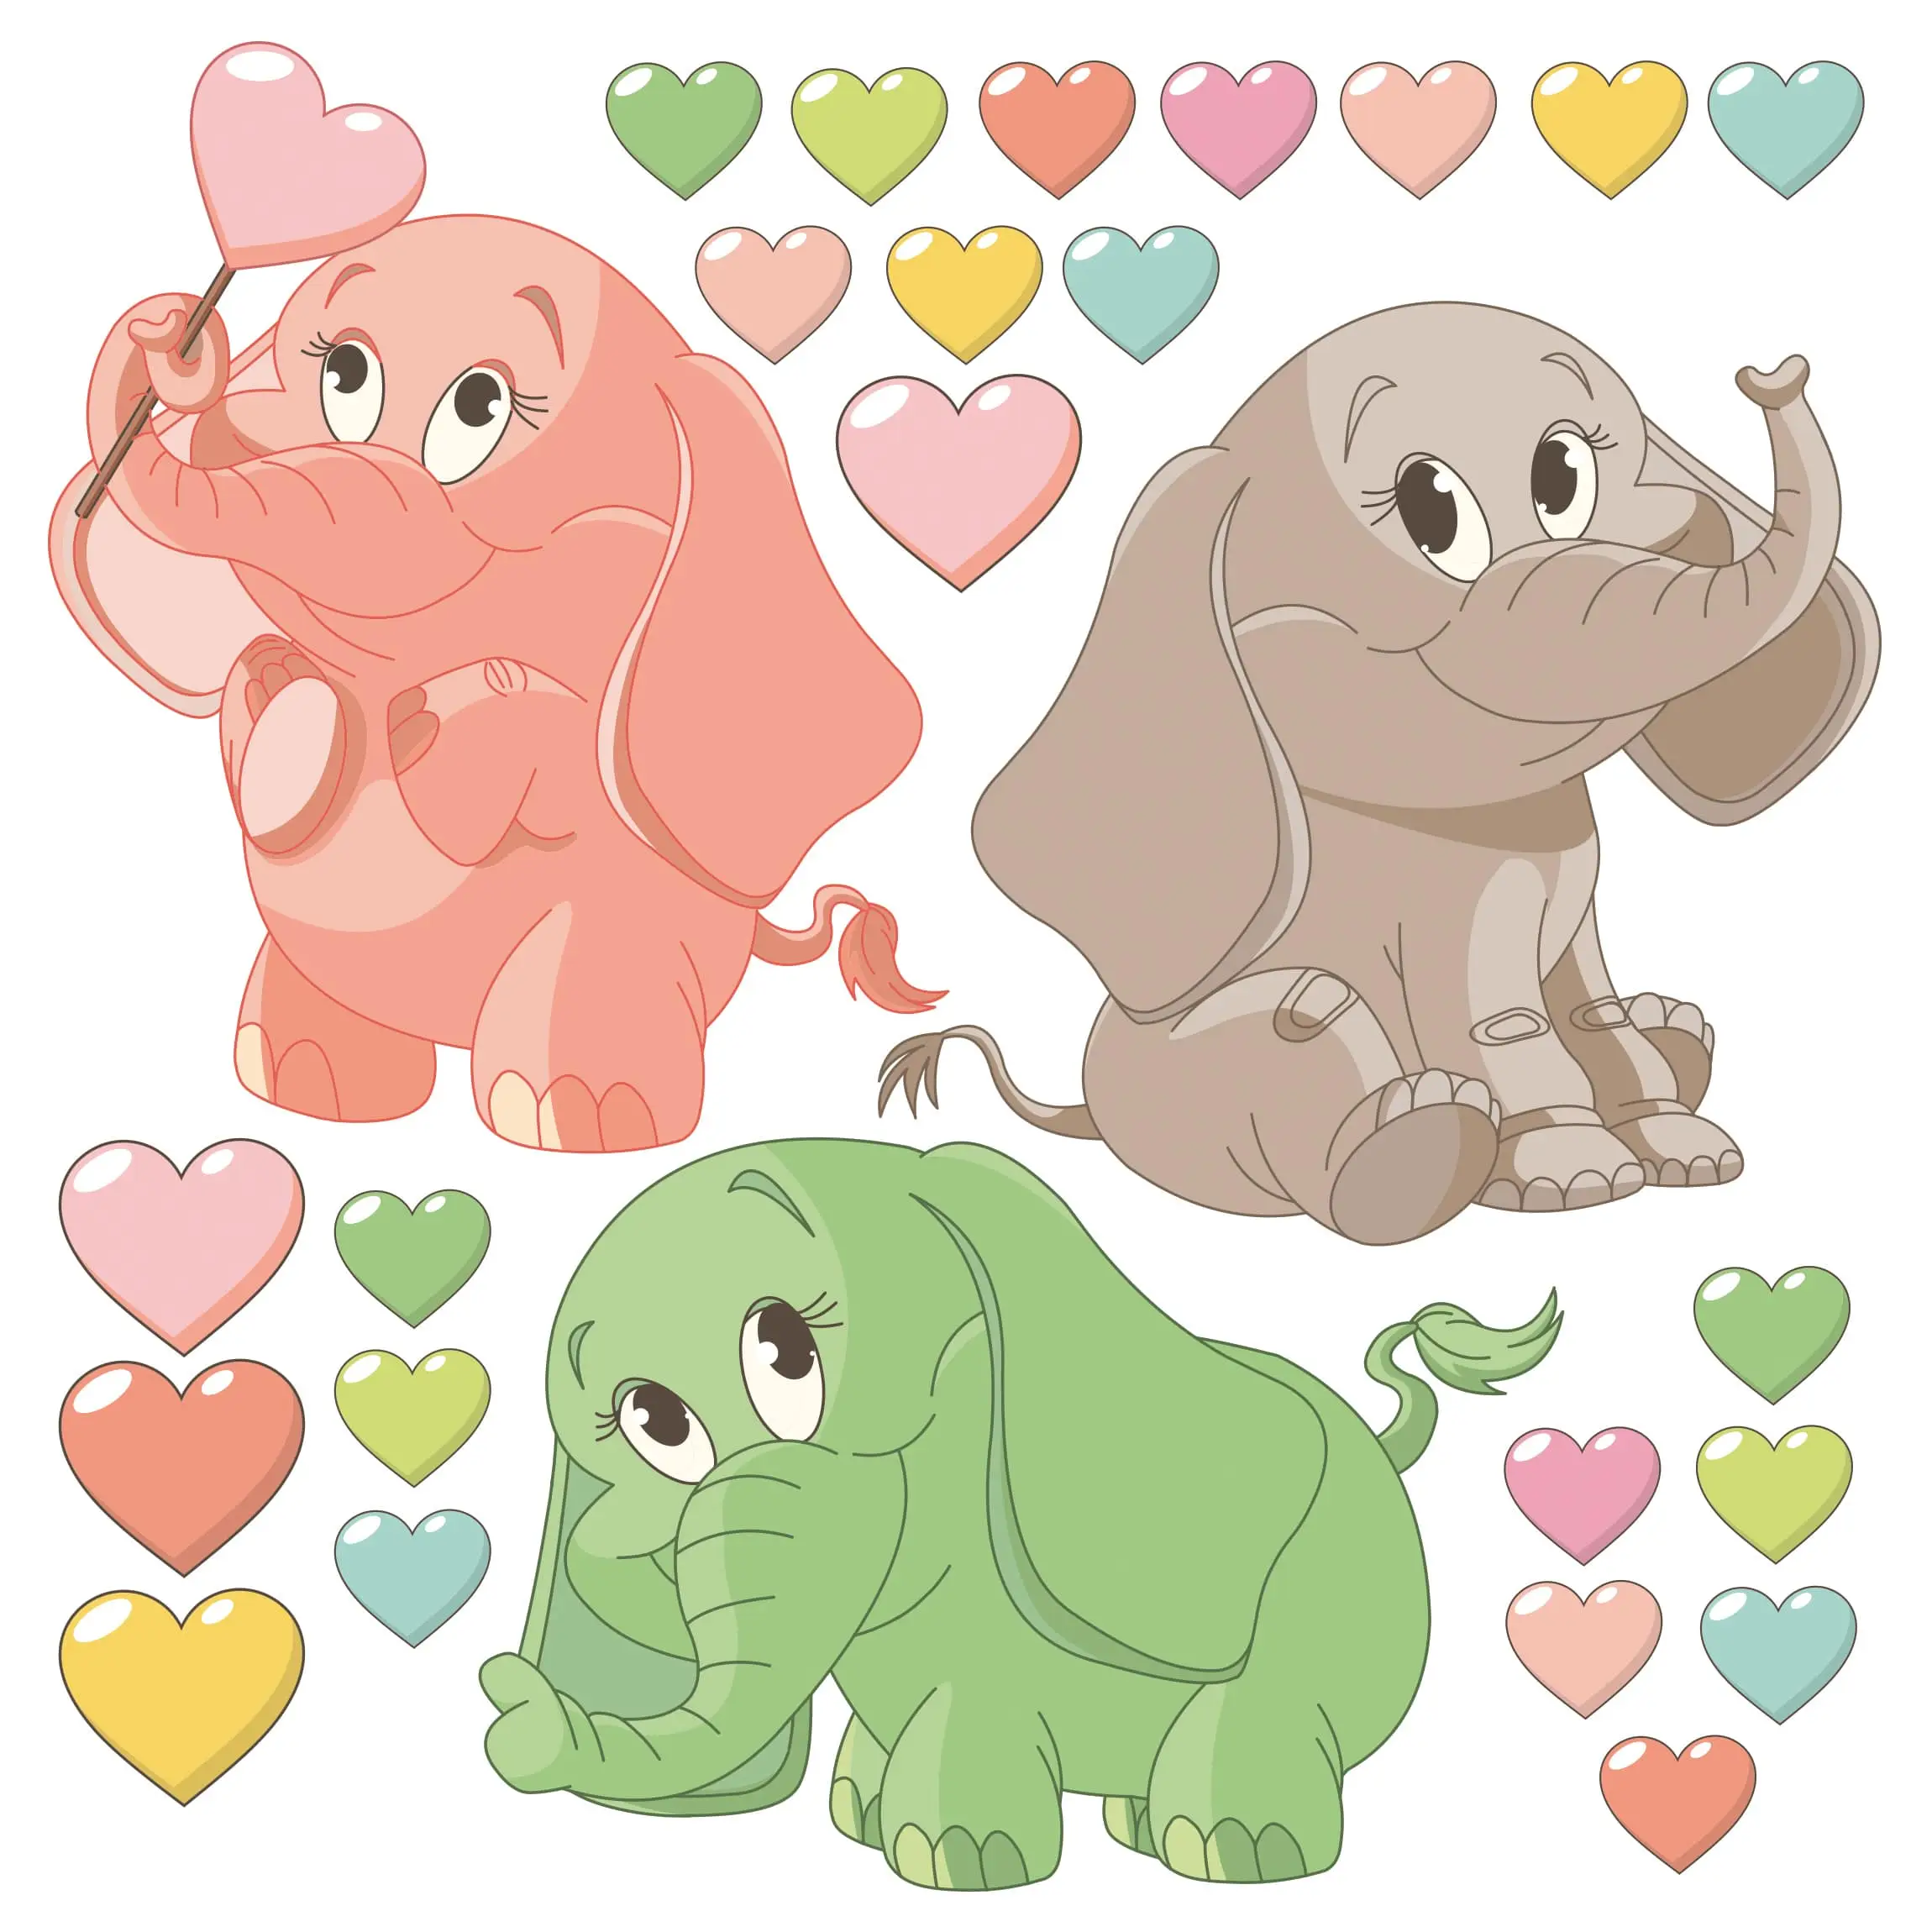 Regenbogen Elefantenbabies mit Herzen